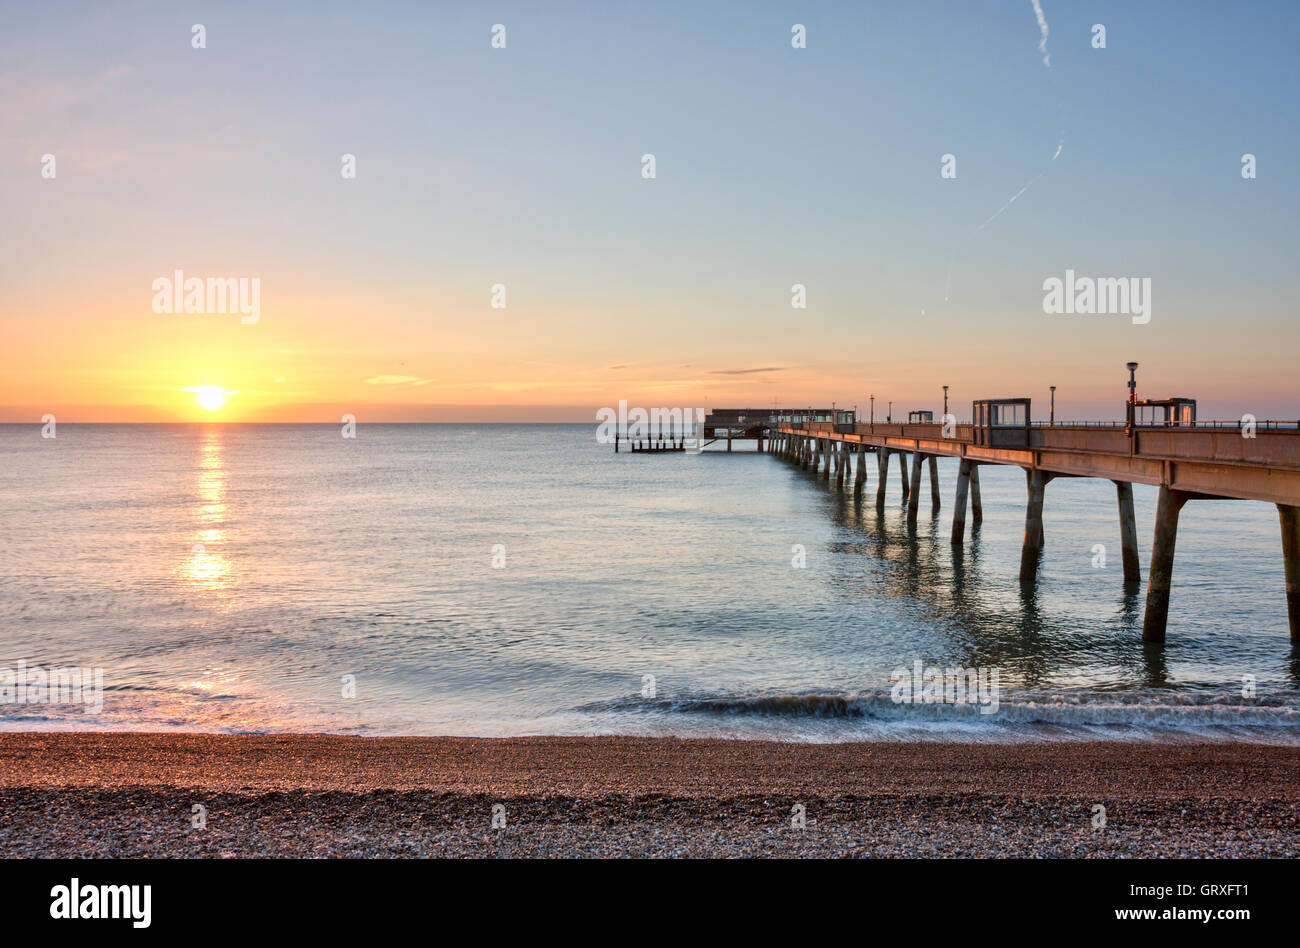 Sunrise, sunup nel cielo blu chiaro con la striscia arancione sul mare di vongole oltre il molo di cemento alla Kent città costiera di trattativa. Spiaggia di ciottoli in primo piano. Foto Stock